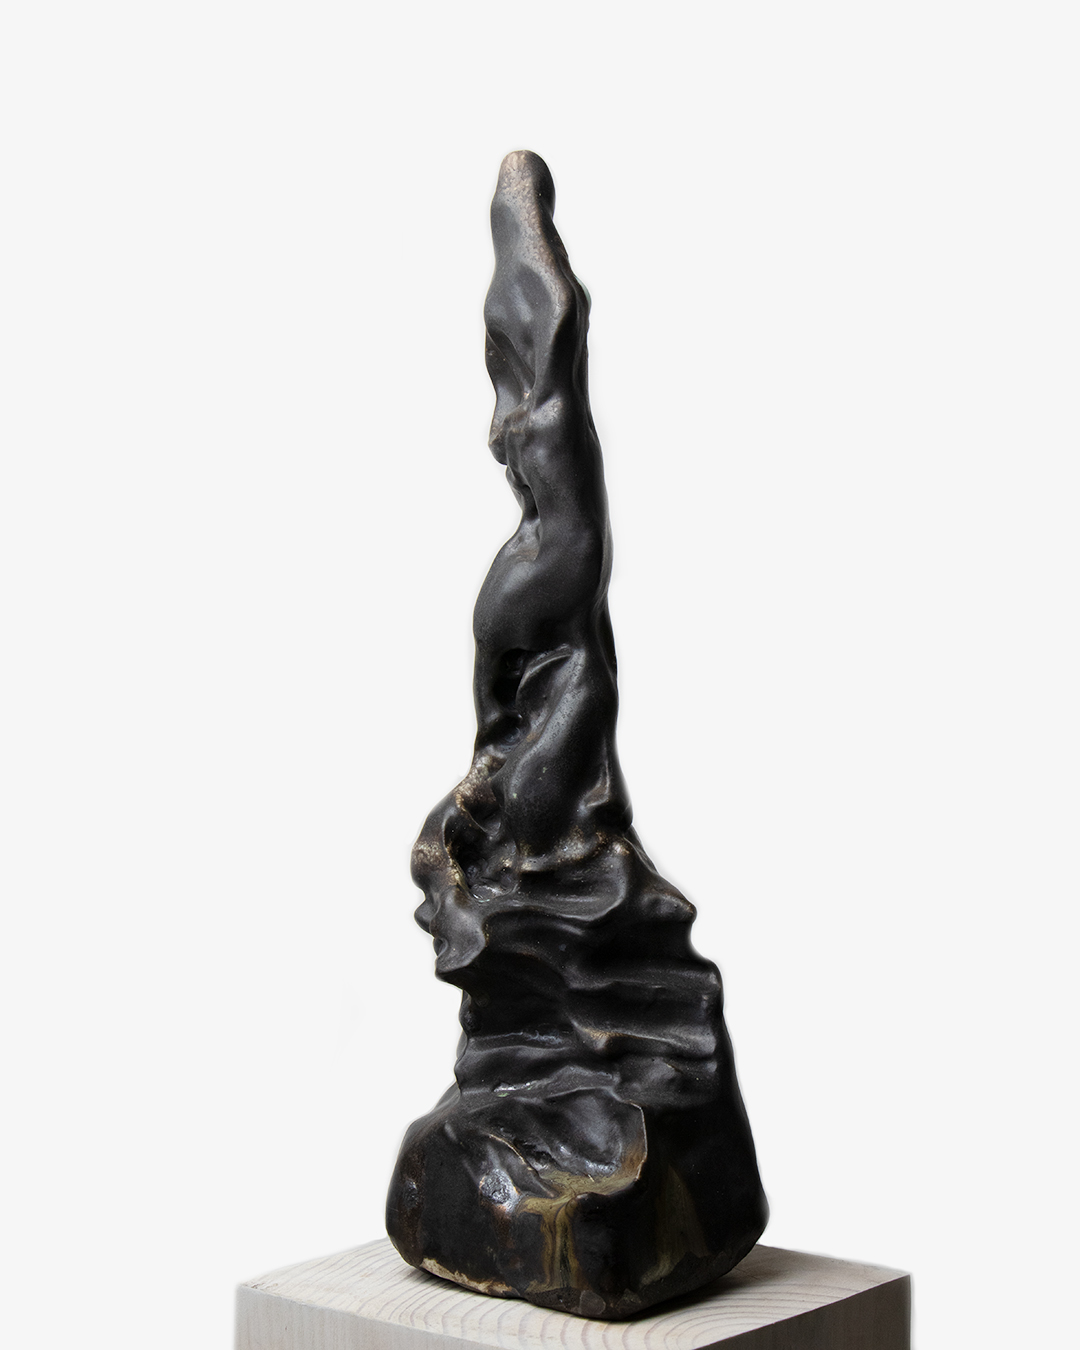 Nicolas-Pierre Réveillard, sculpture "Ascension" 4